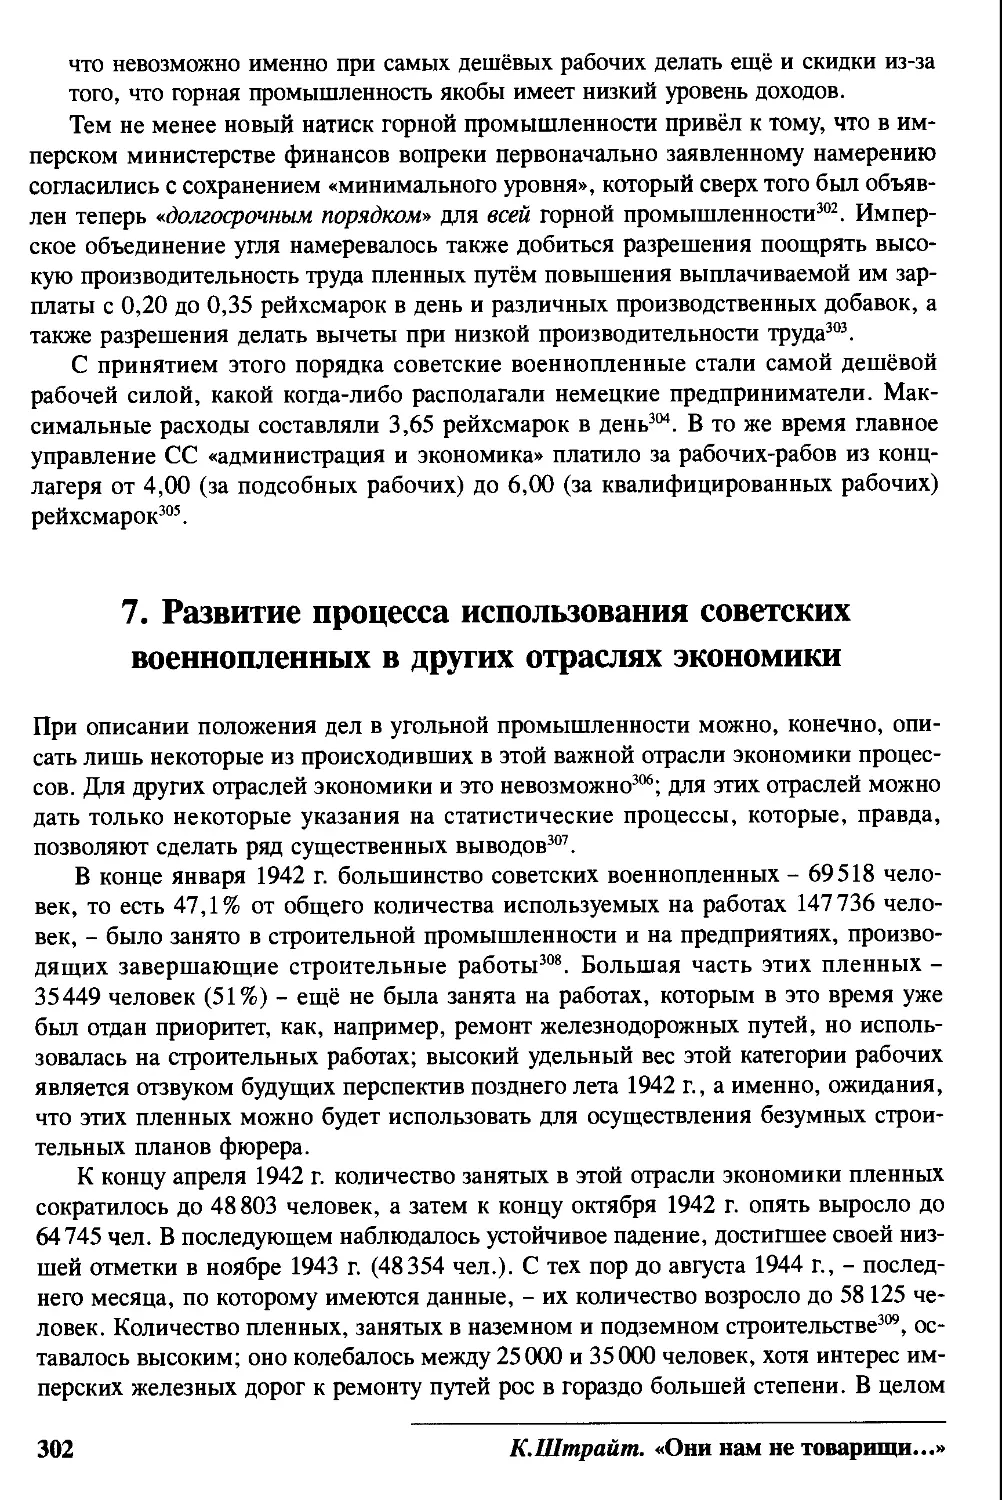 7. Развитие процесса использования советских военнопленных в других отраслях экономики